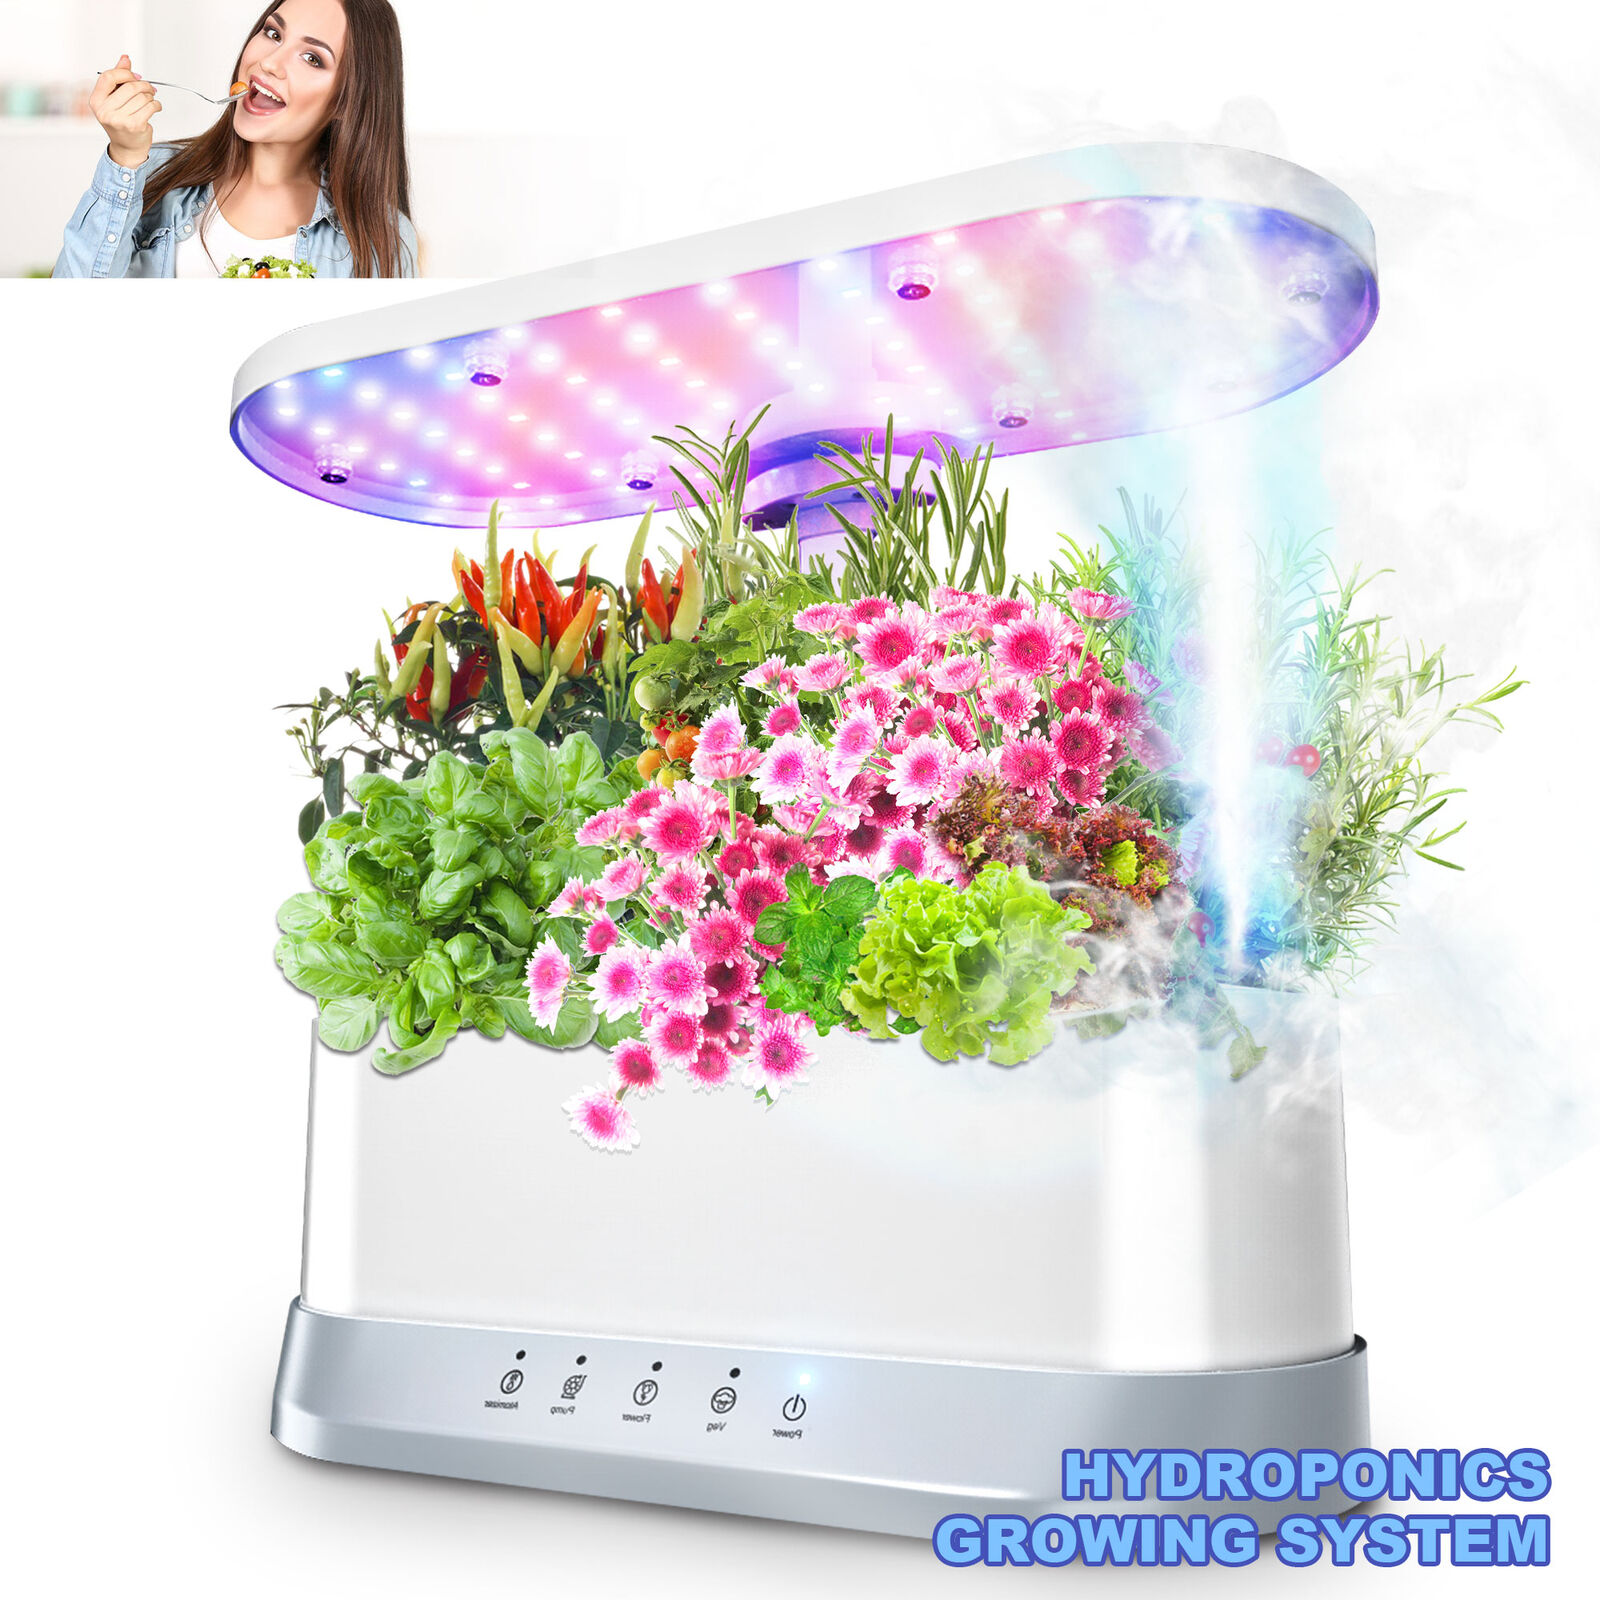 Hydroponics Growing System Indoor Garden Quiet Water Pump Mist Humidifier